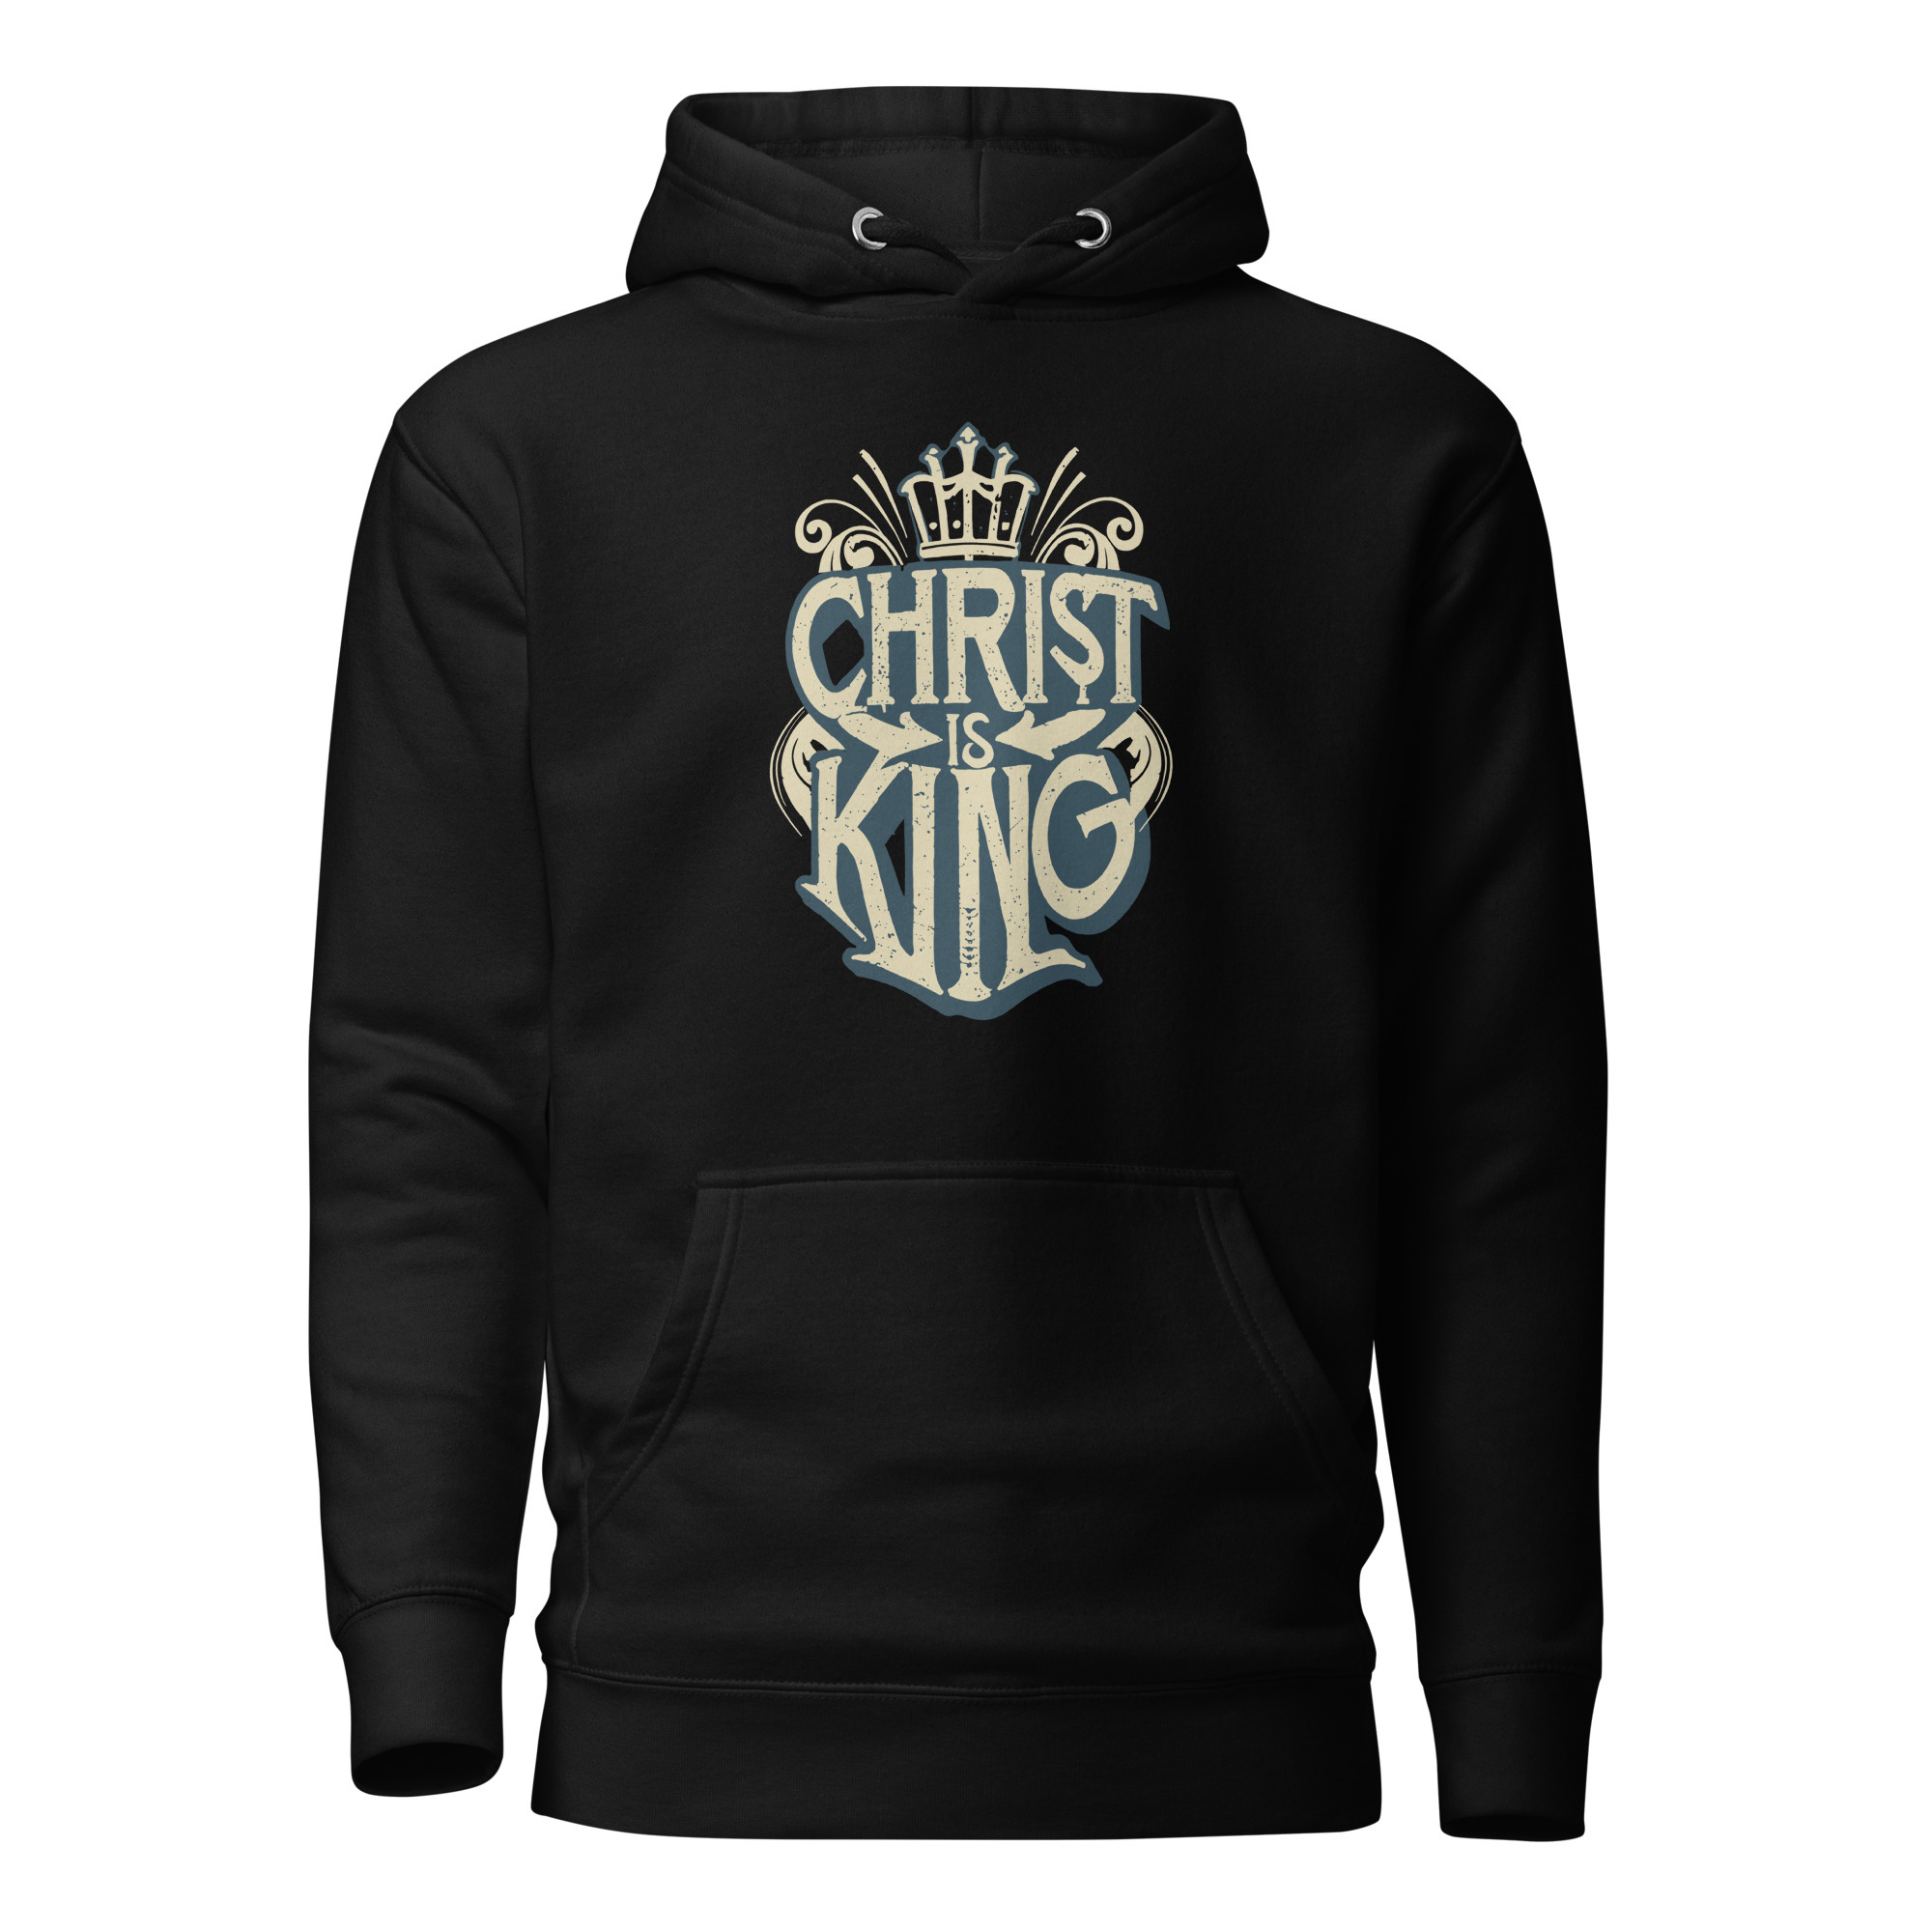 Christ is King Hoodie - Black / S